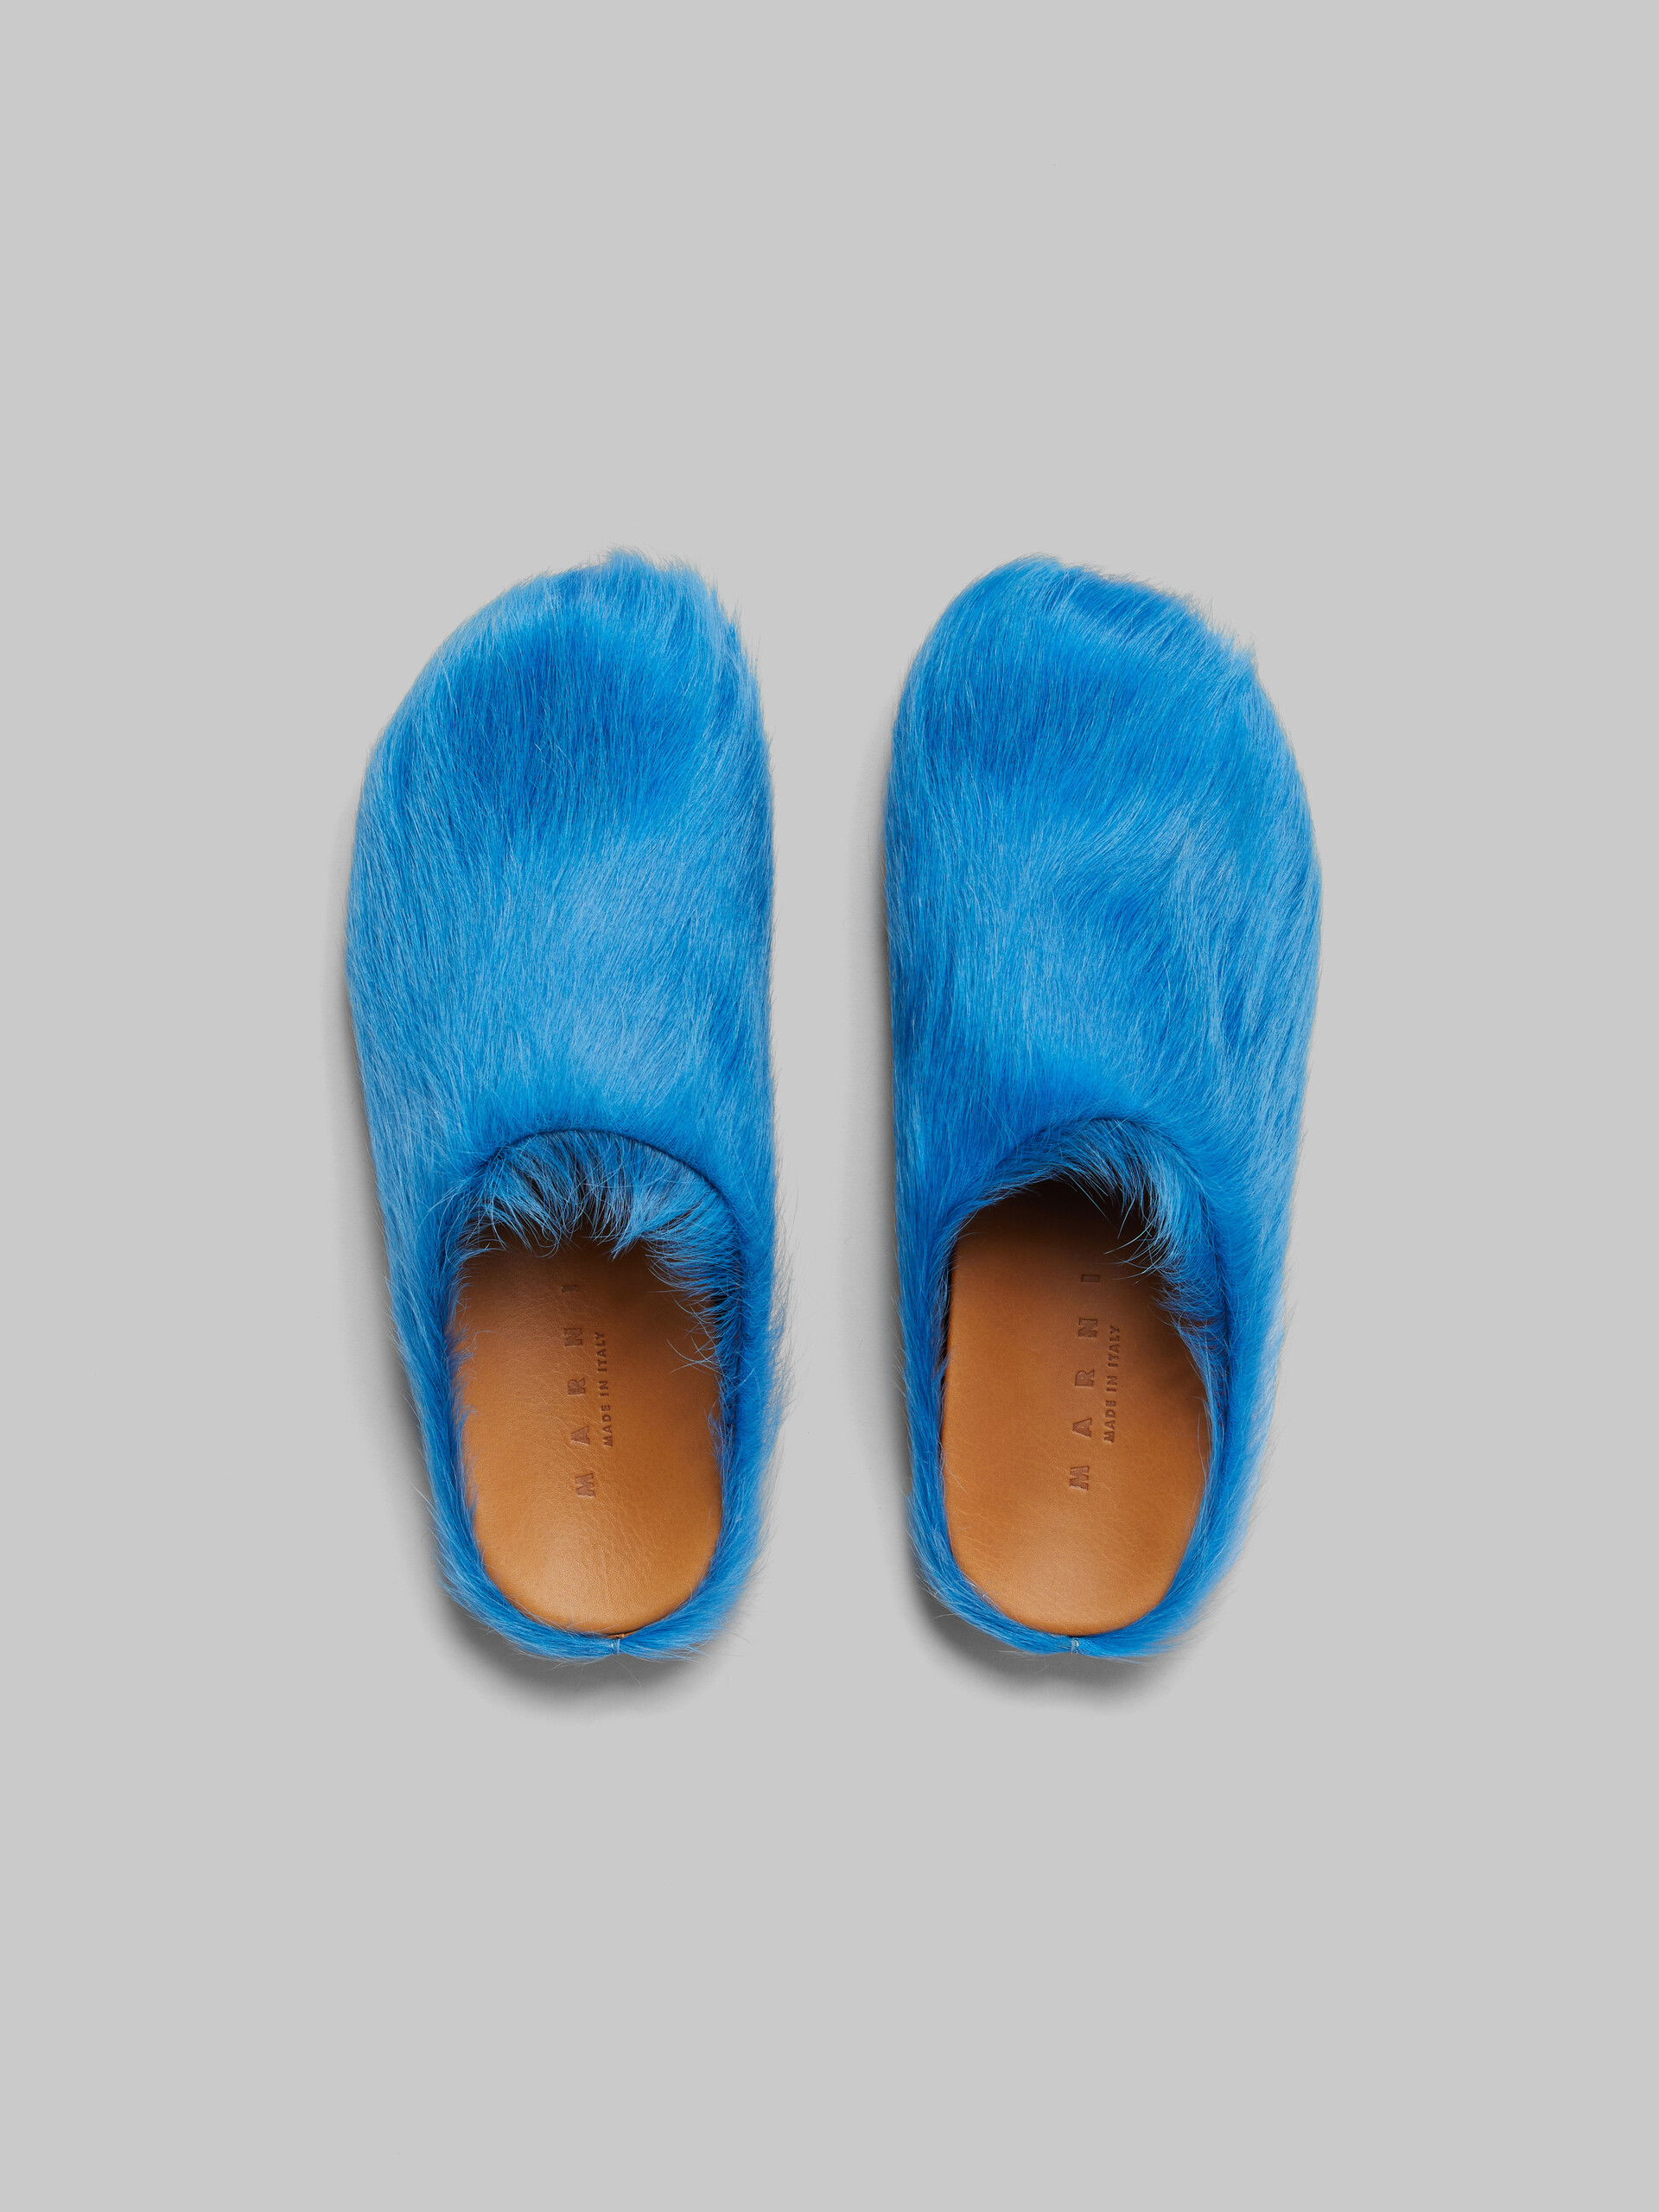 Blue long-hair calfskin Fussbett sabot - Clogs - Image 4